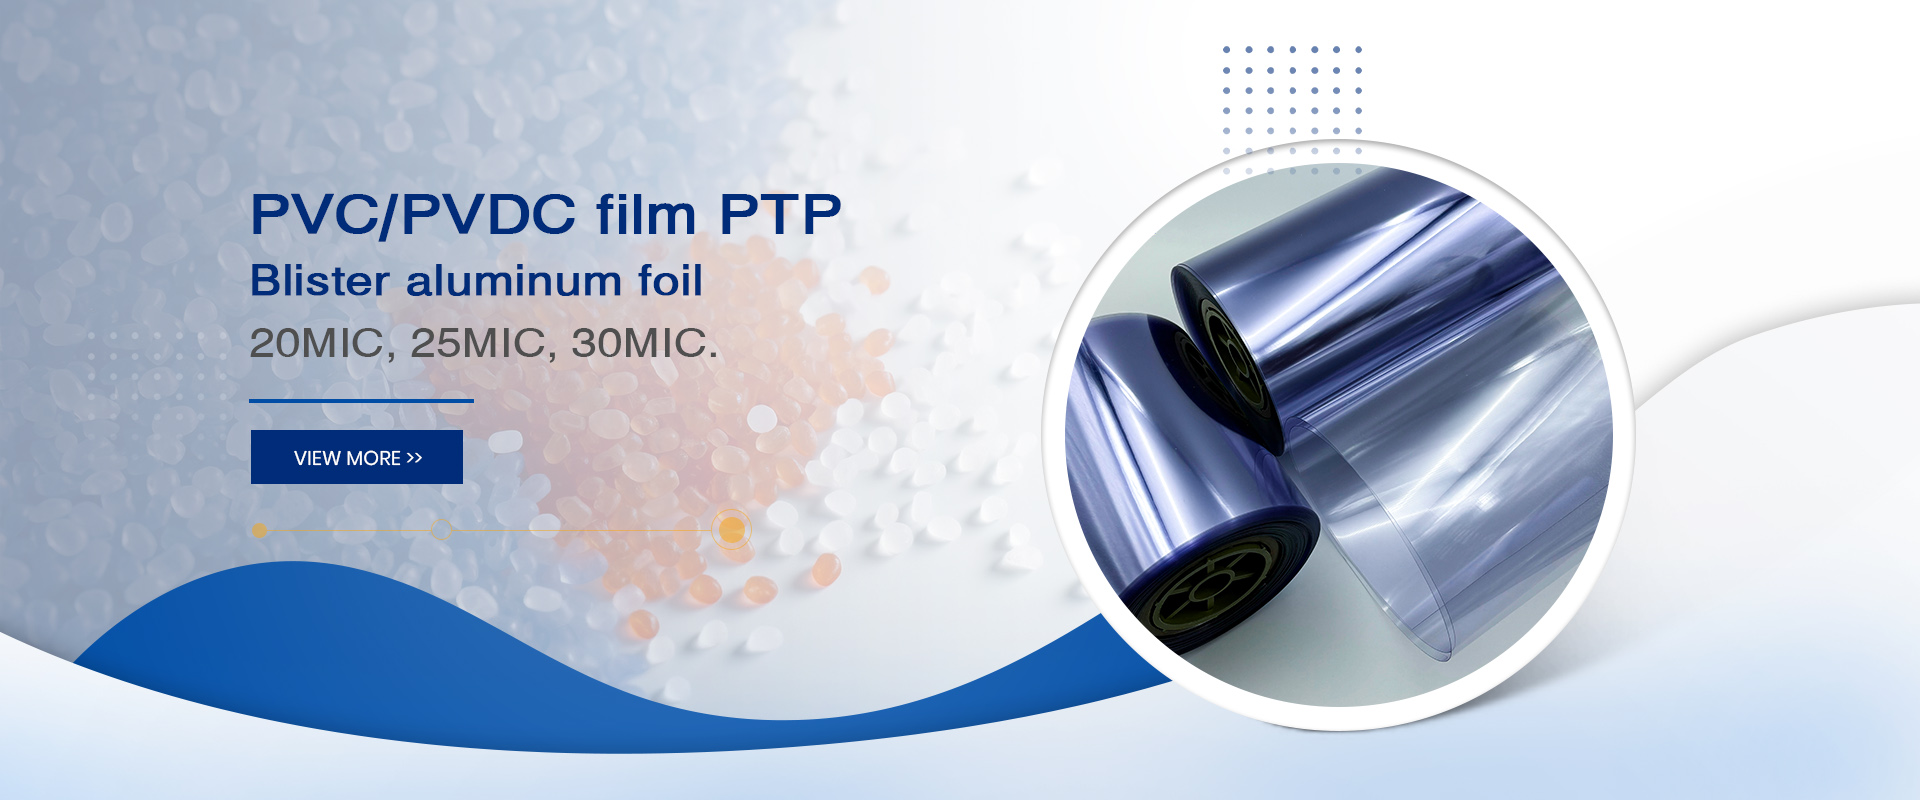 PTP màng PVC/PVDC